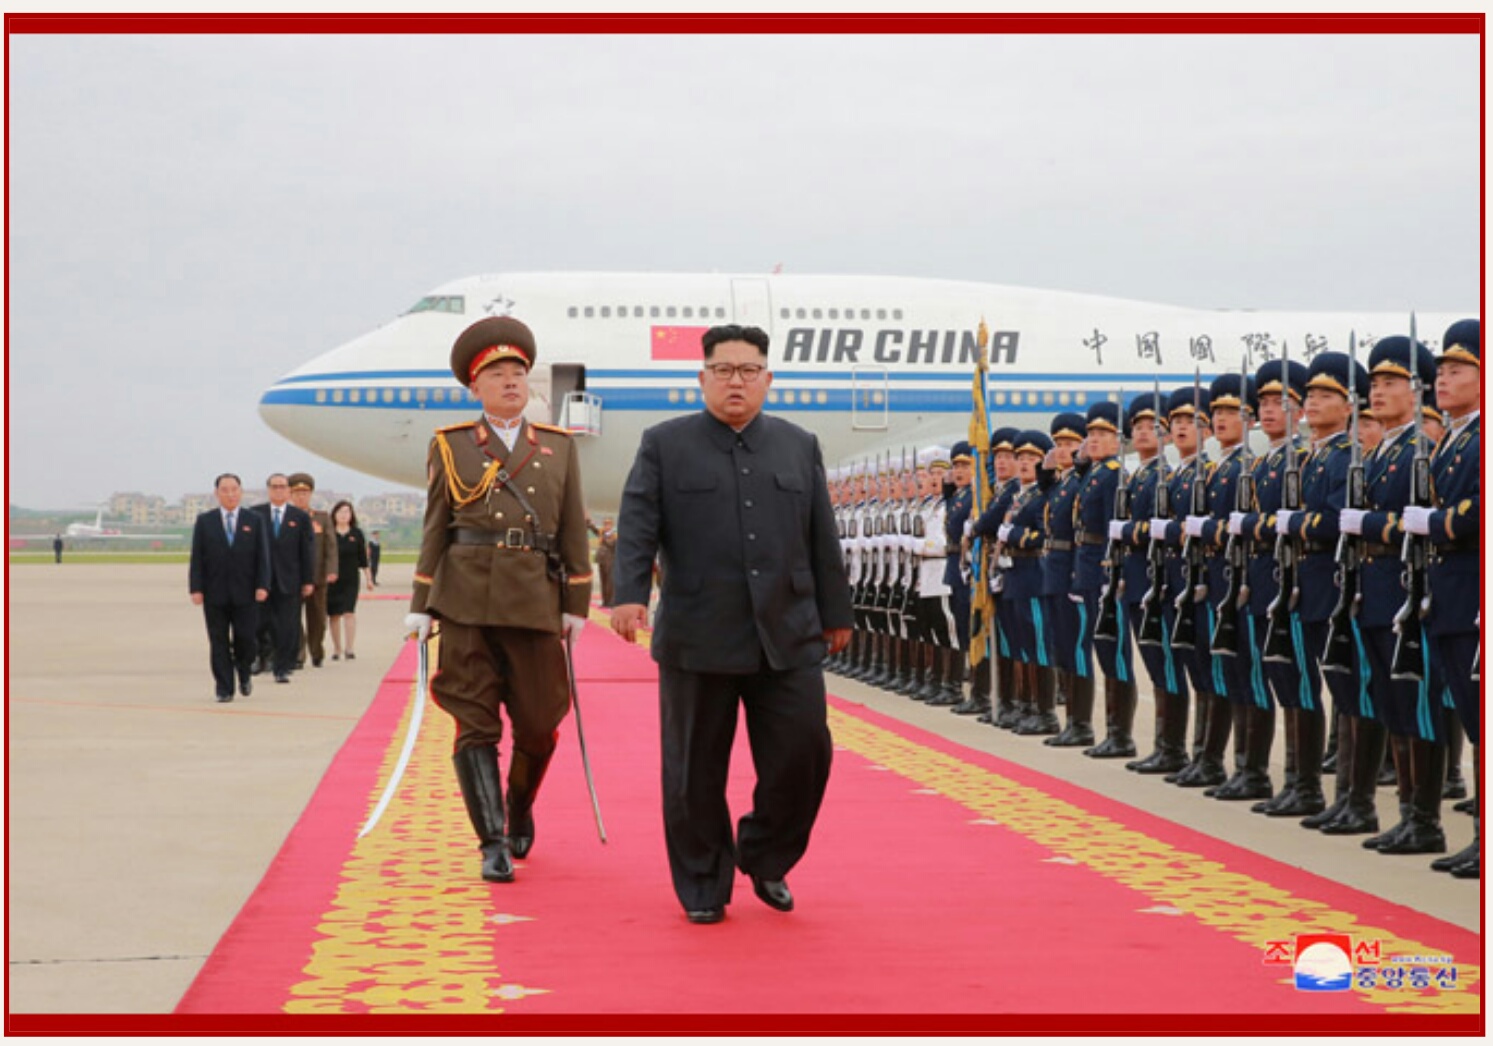 Kim Jong Un Returns Home - Image